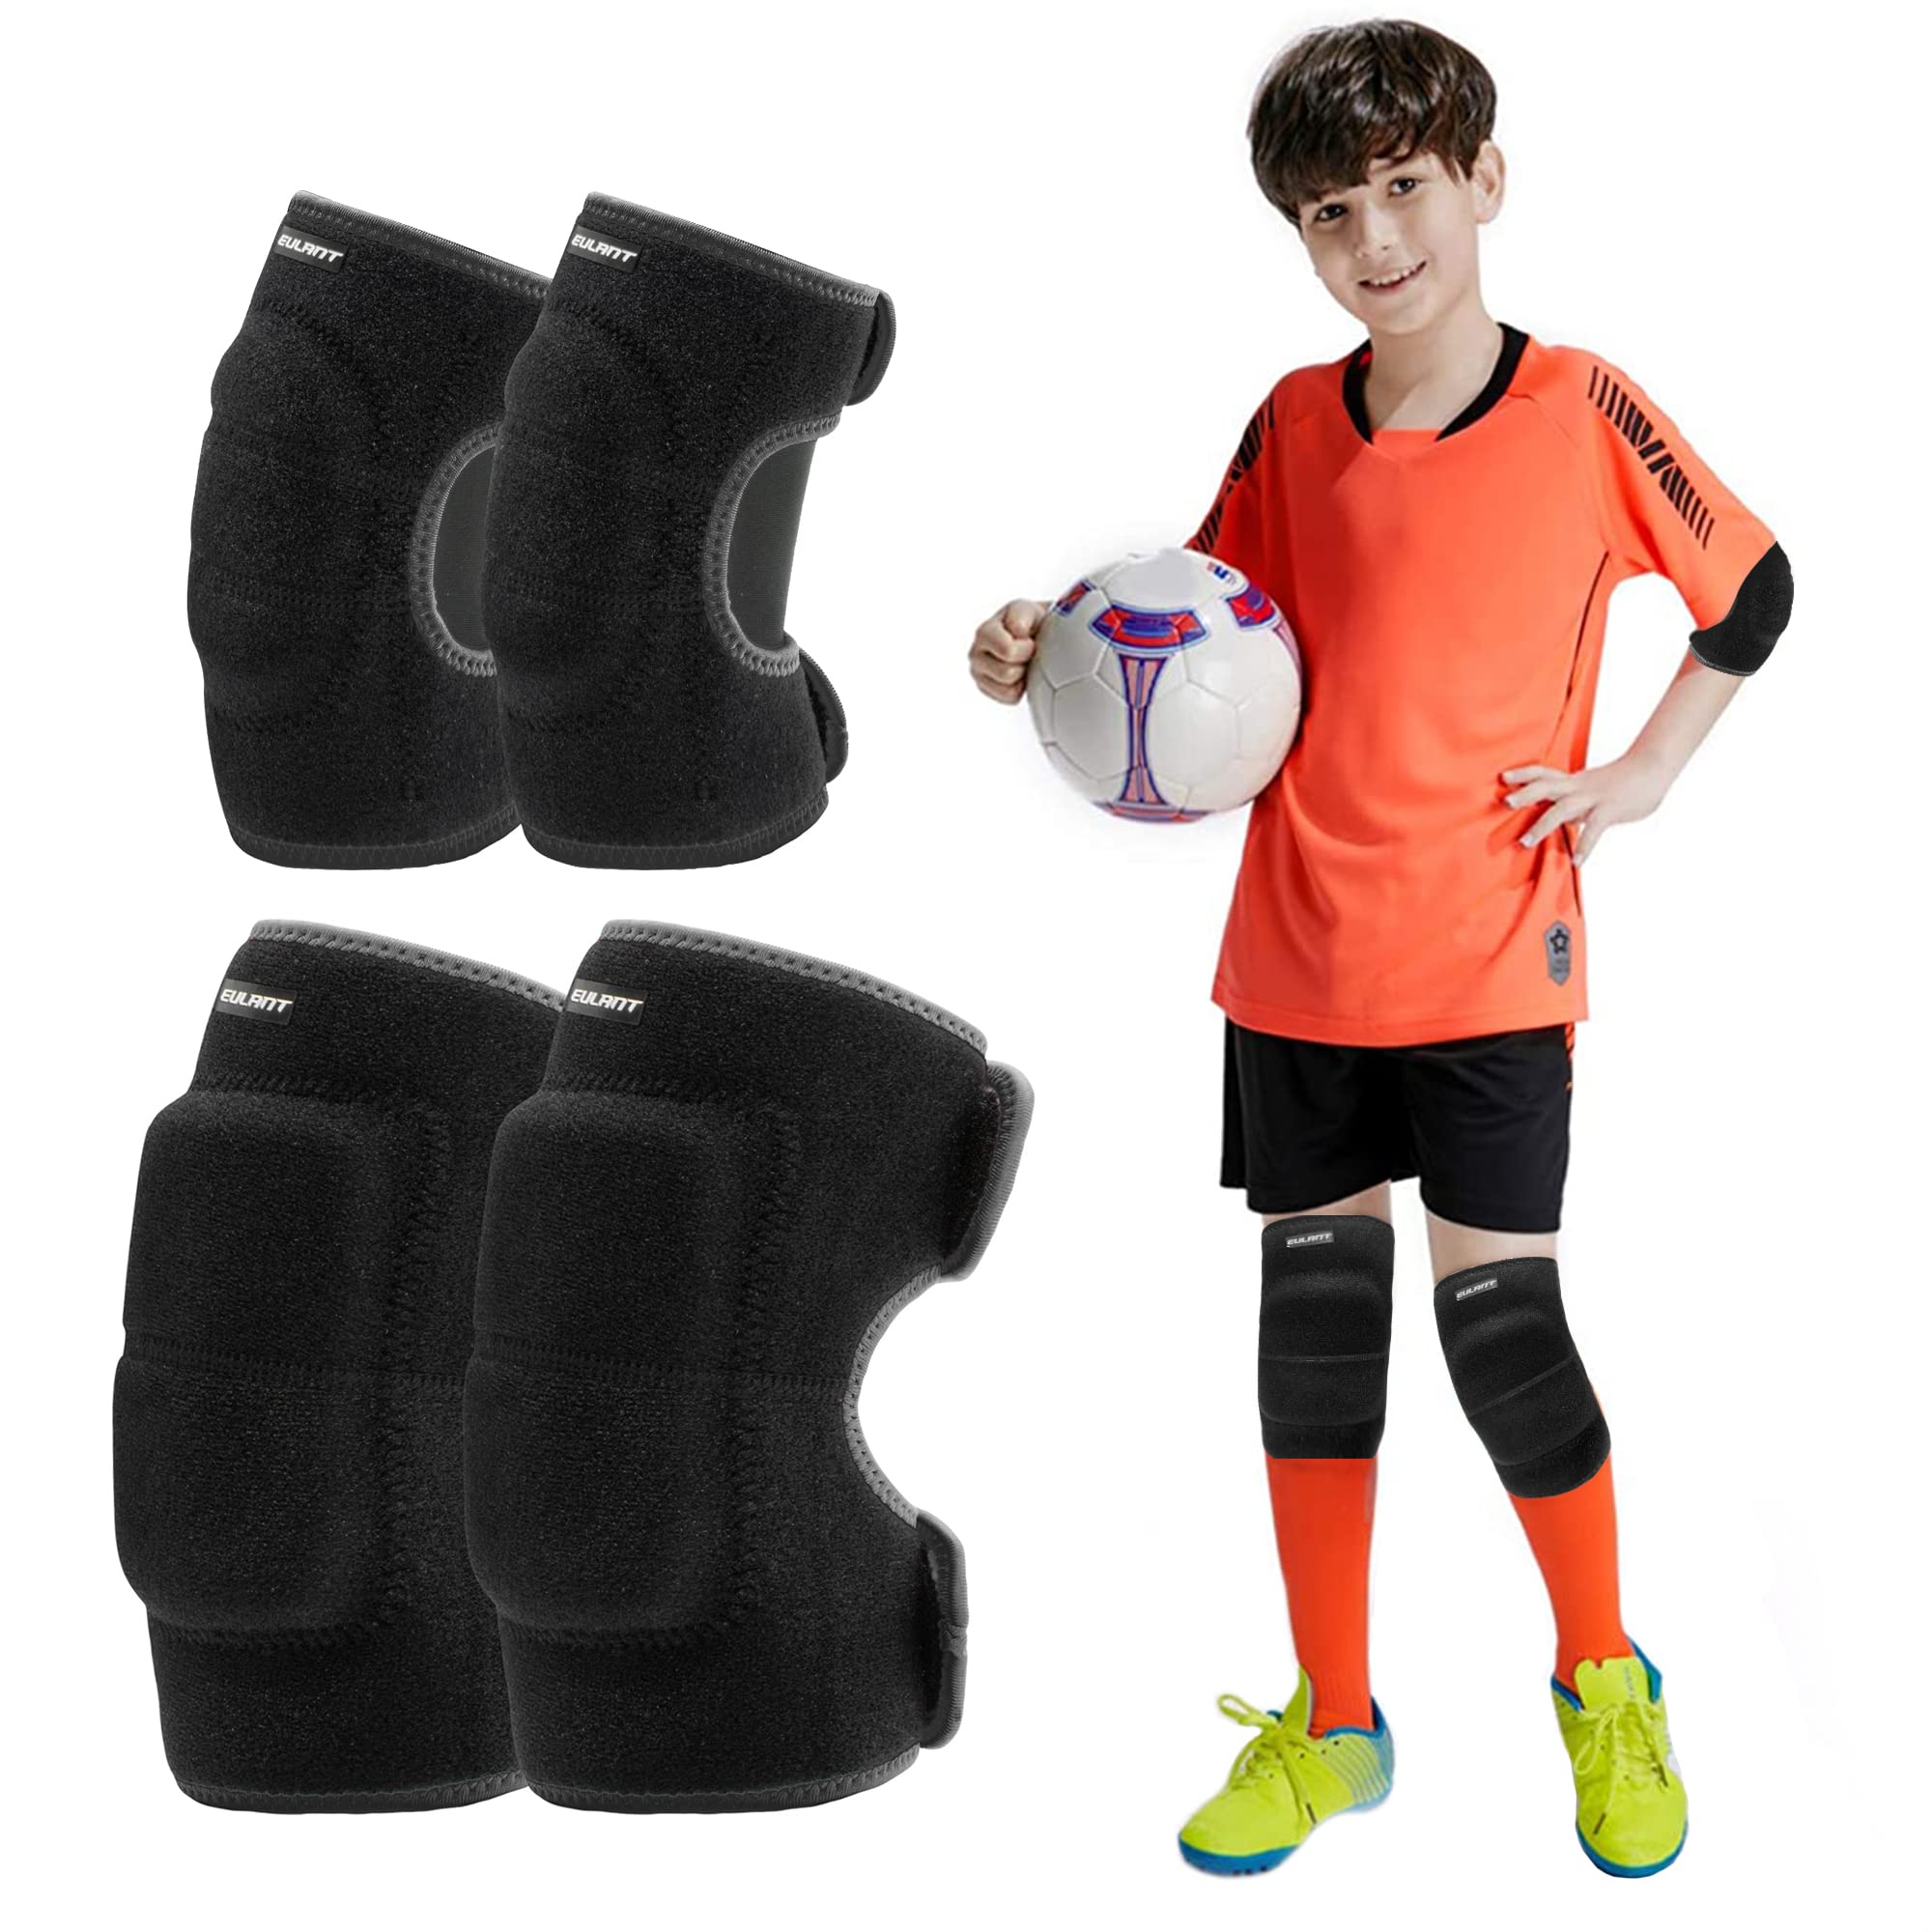 basketball knee pads for kids, basketball knee pads for kids